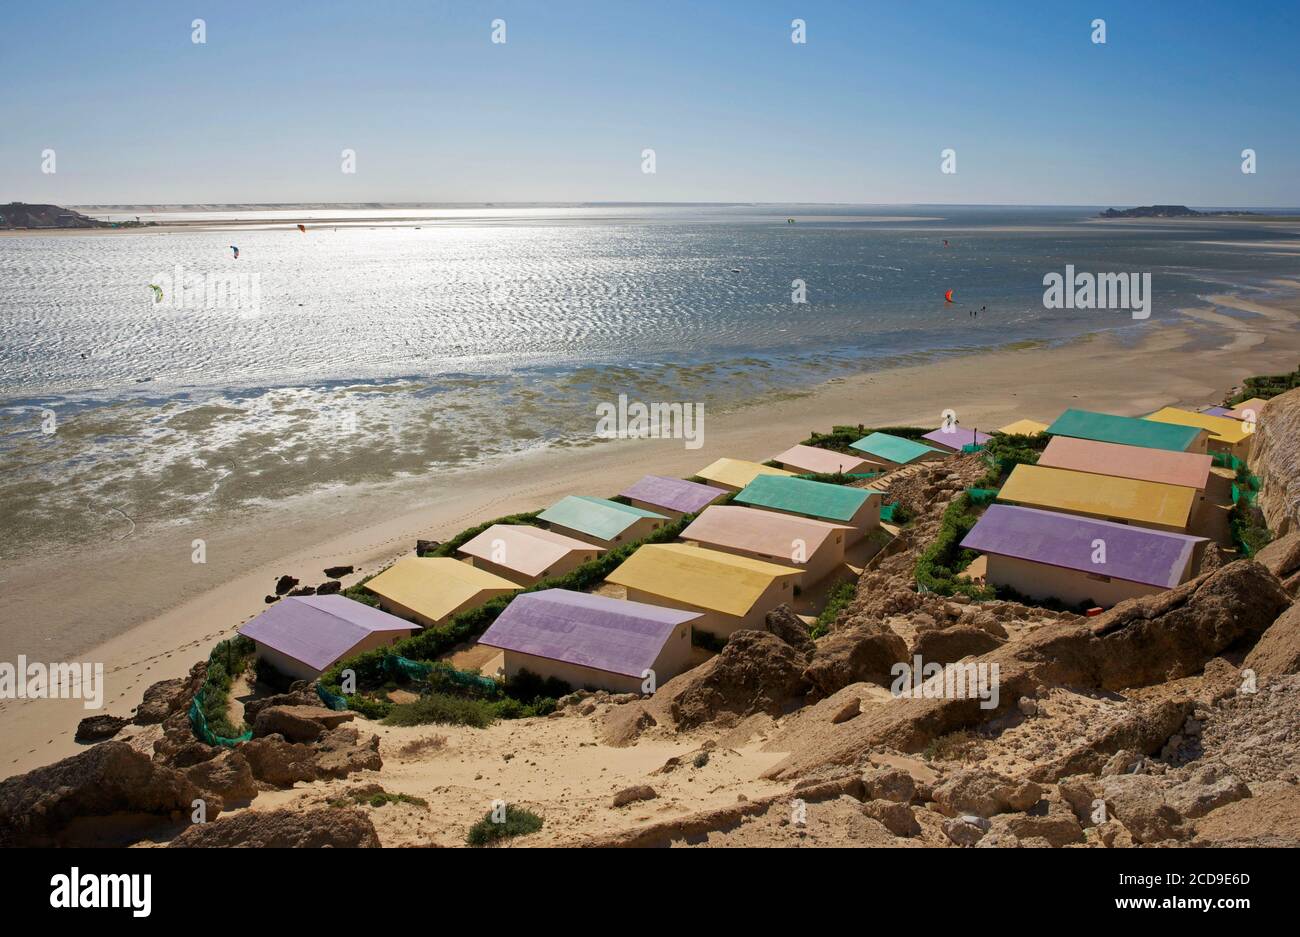 Marocco, Sahara occidentale, Dakhla, tetti colorati dell'hotel PK25 di fronte alla laguna e le montagne del deserto Foto Stock